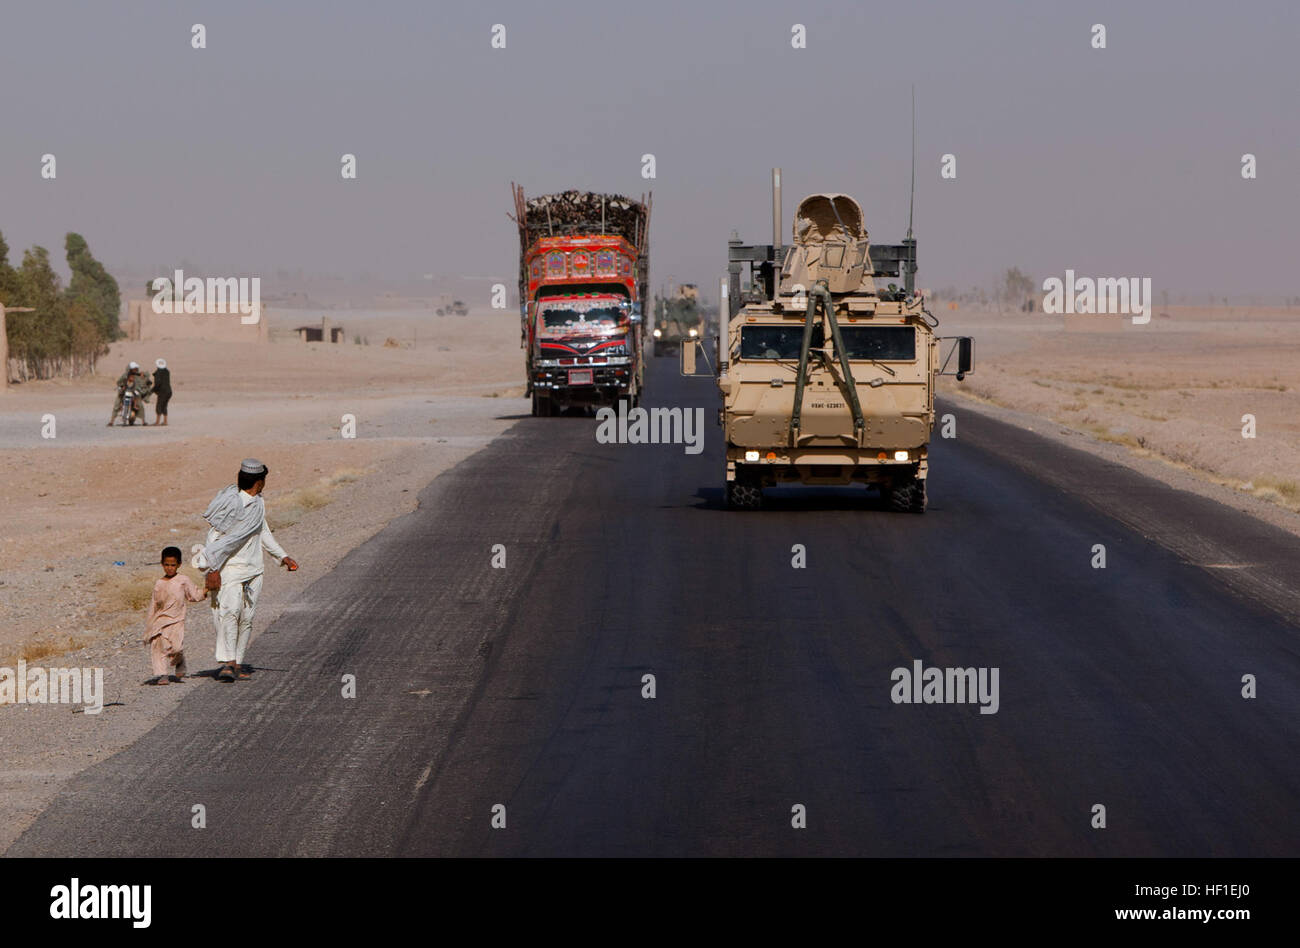 Ein Logistik-System Fahrzeug Ersatz Traktor nähert sich zwei afghanische Fußgänger während einer Bekämpfung Logistik-Patrouille unter der Leitung von Combat Logistik-Regiment 2, Regional Command (Südwesten), 22. August 2013, in der Provinz Helmand, Afghanistan. Mehr als 30 Fahrzeuge nahmen Teil des Konvois, die gleichzeitige Unterstützung vorwärts Operating Bases Shir Ghazi und Shukvani zur Verfügung gestellt. CLR-2 Konvoi testet Logistik Umschlag 130822-M-ZB219-178 Stockfoto